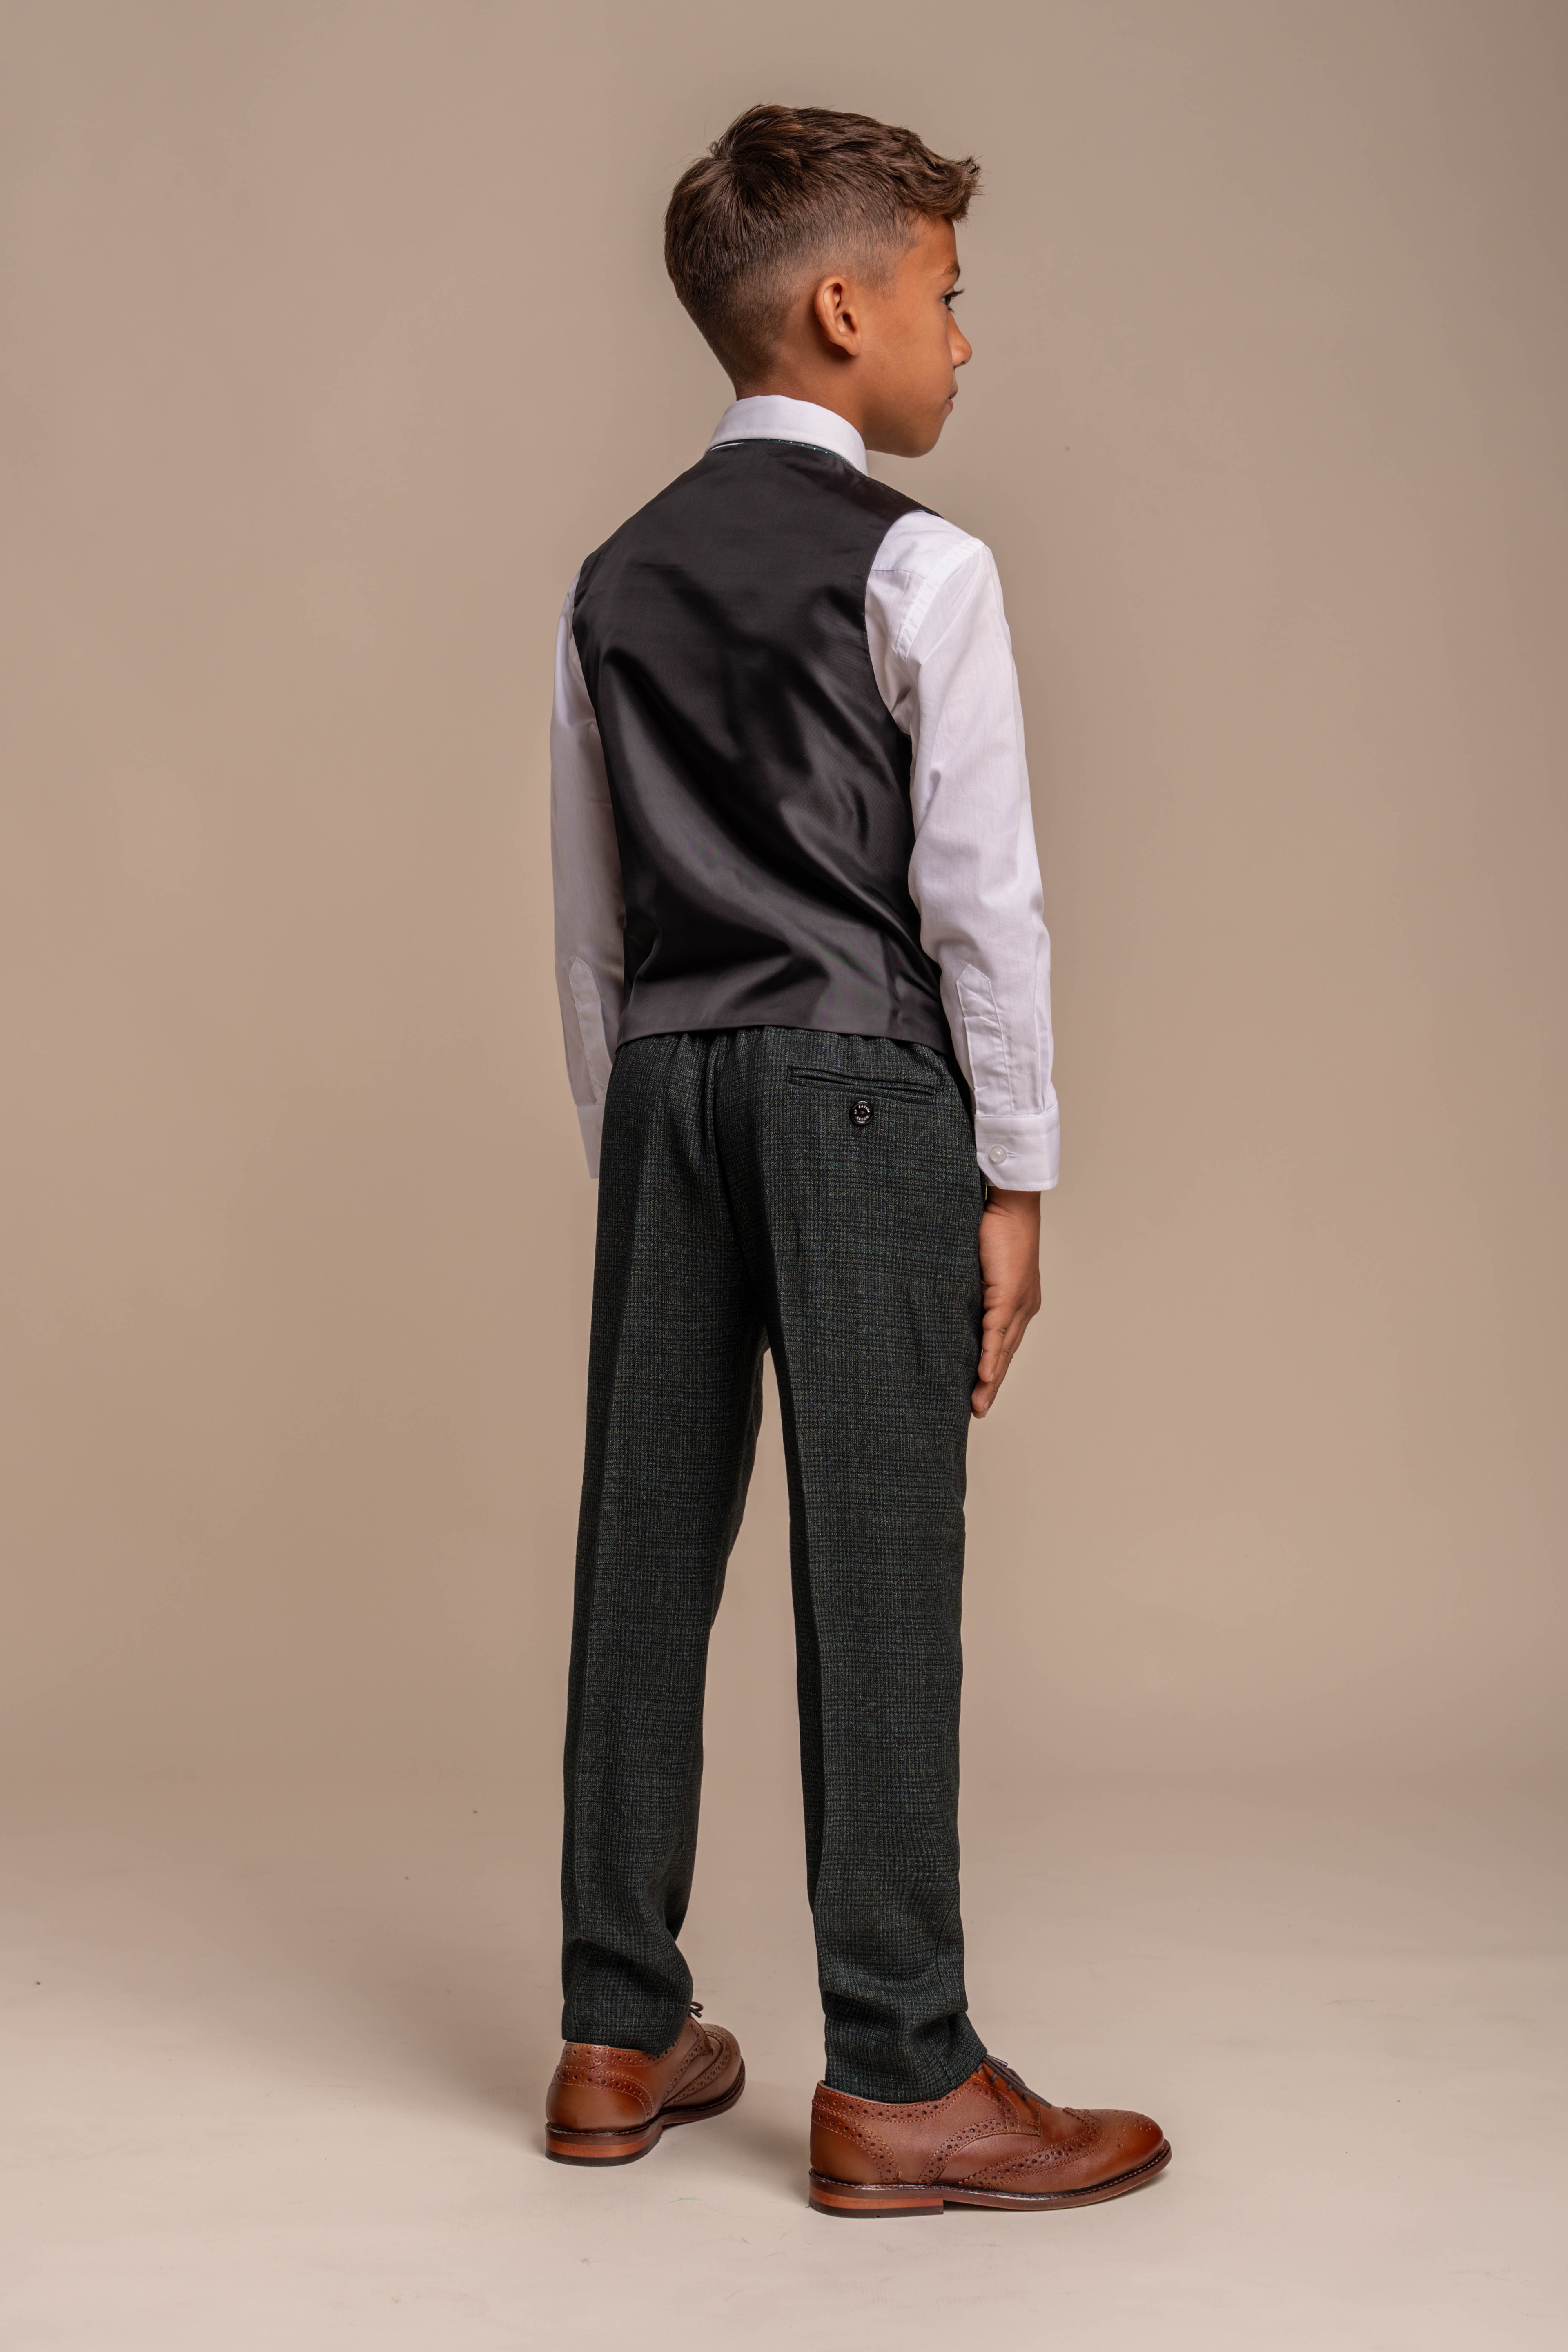 Jungen Anzug in Slim Fit für Formelle Anlässe - CARIDI